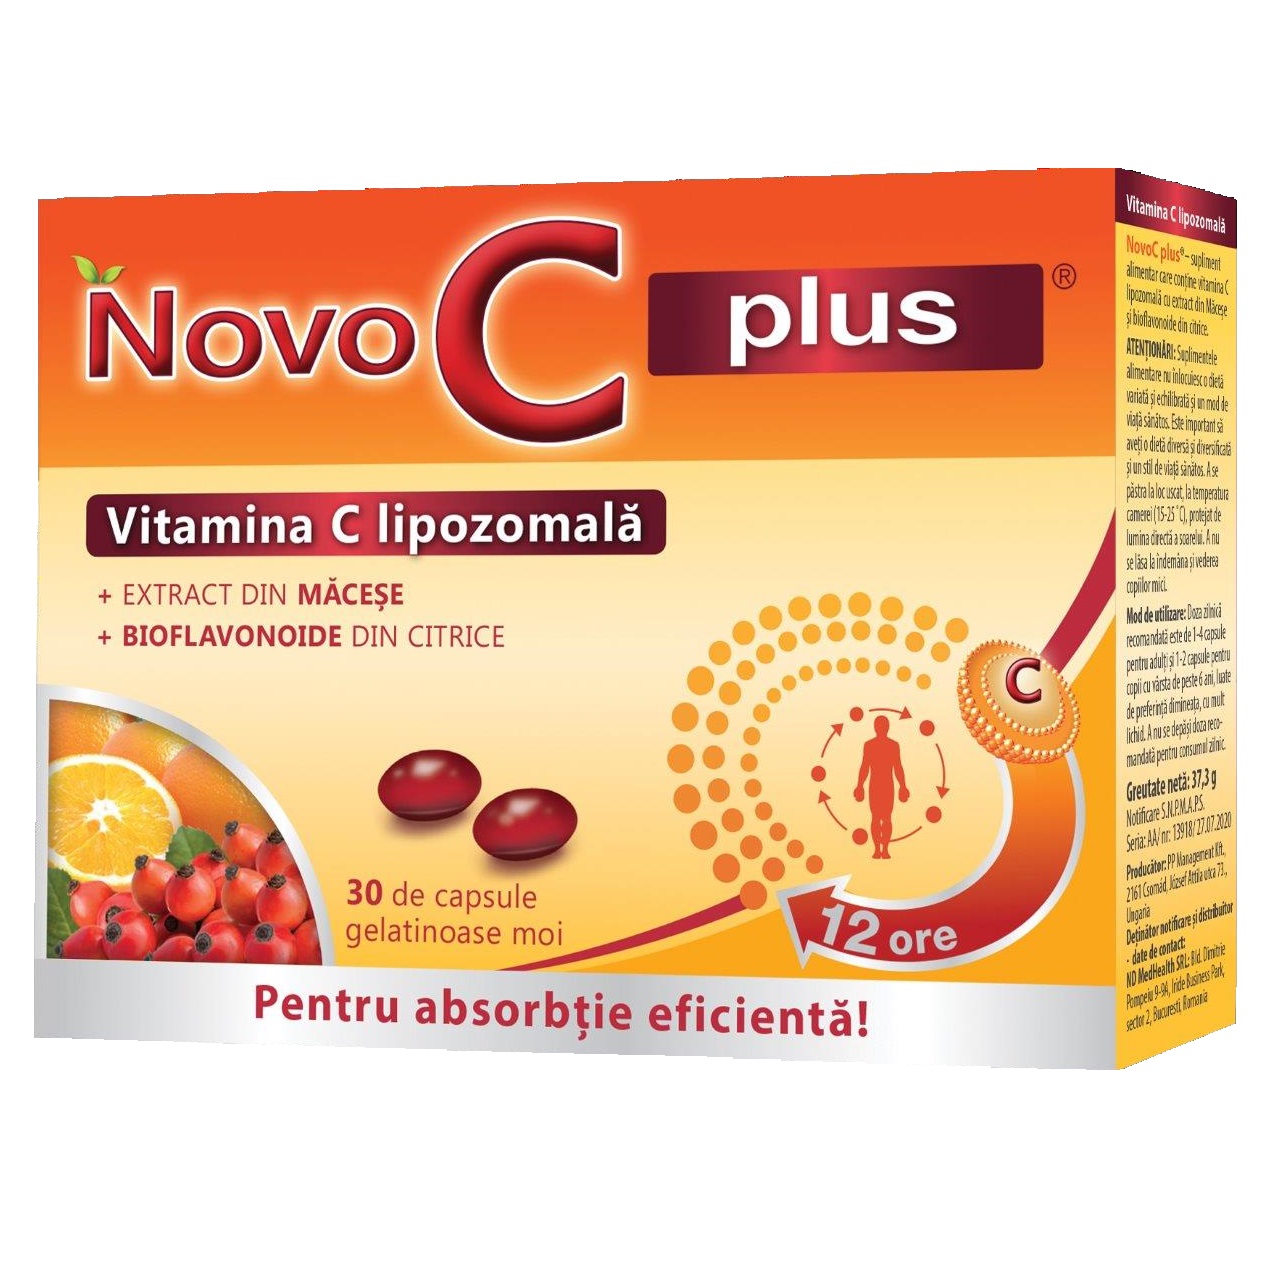 Complex natural pentru Prostata, 60 capsule, Vitaking